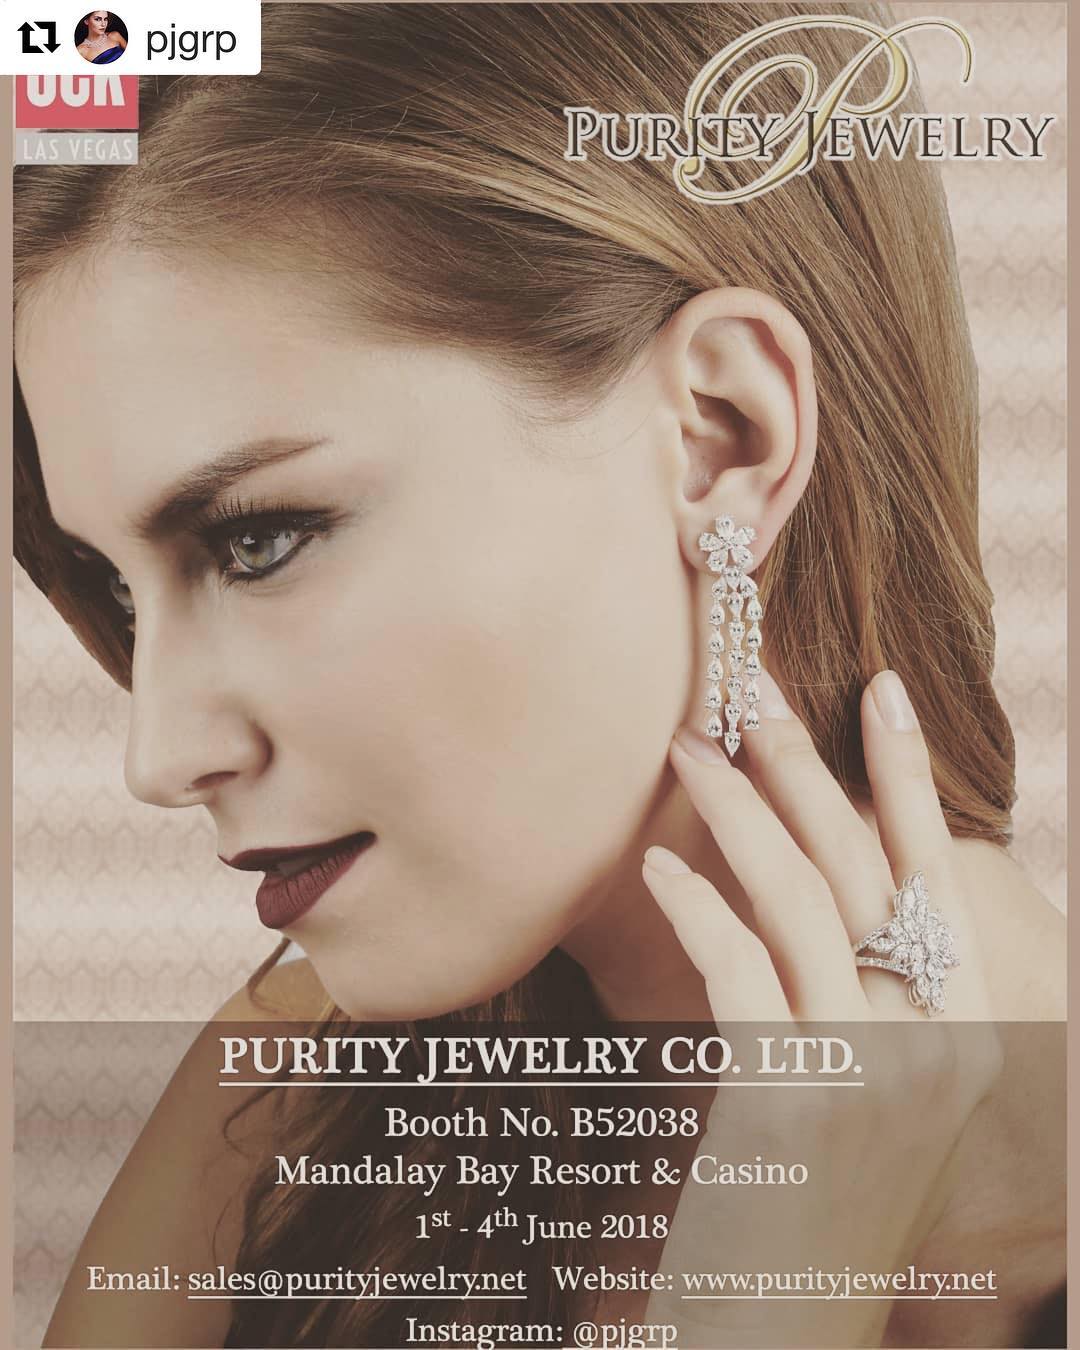 Purity Jewelry Co. Ltd.